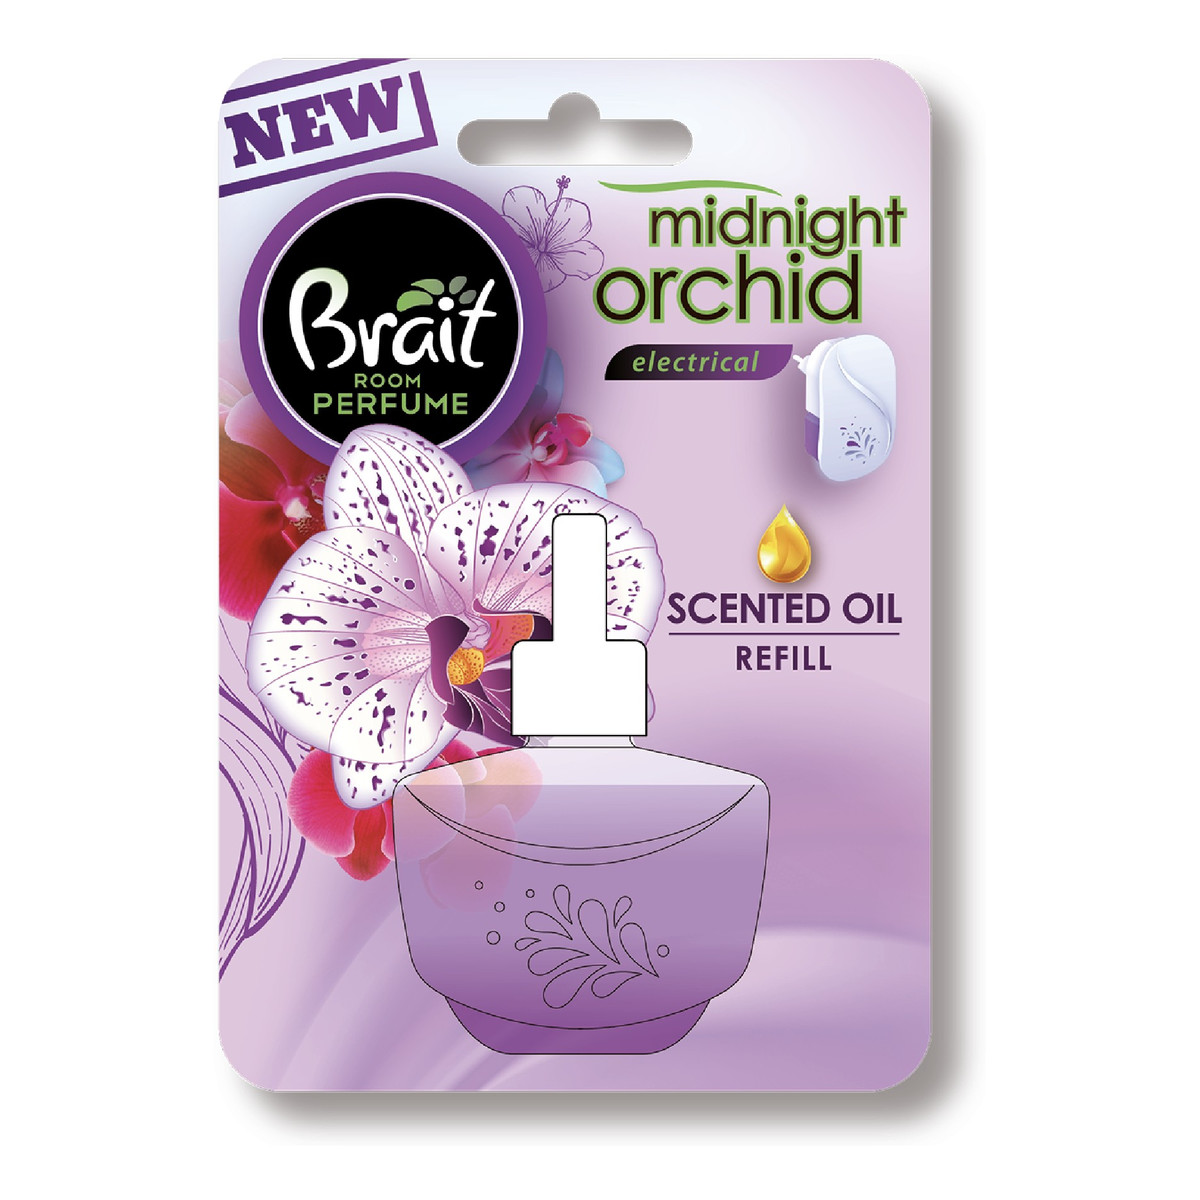 Brait Room Perfume zapas do elektrycznego odświeżacza powietrza Midnight Orchid 20ml